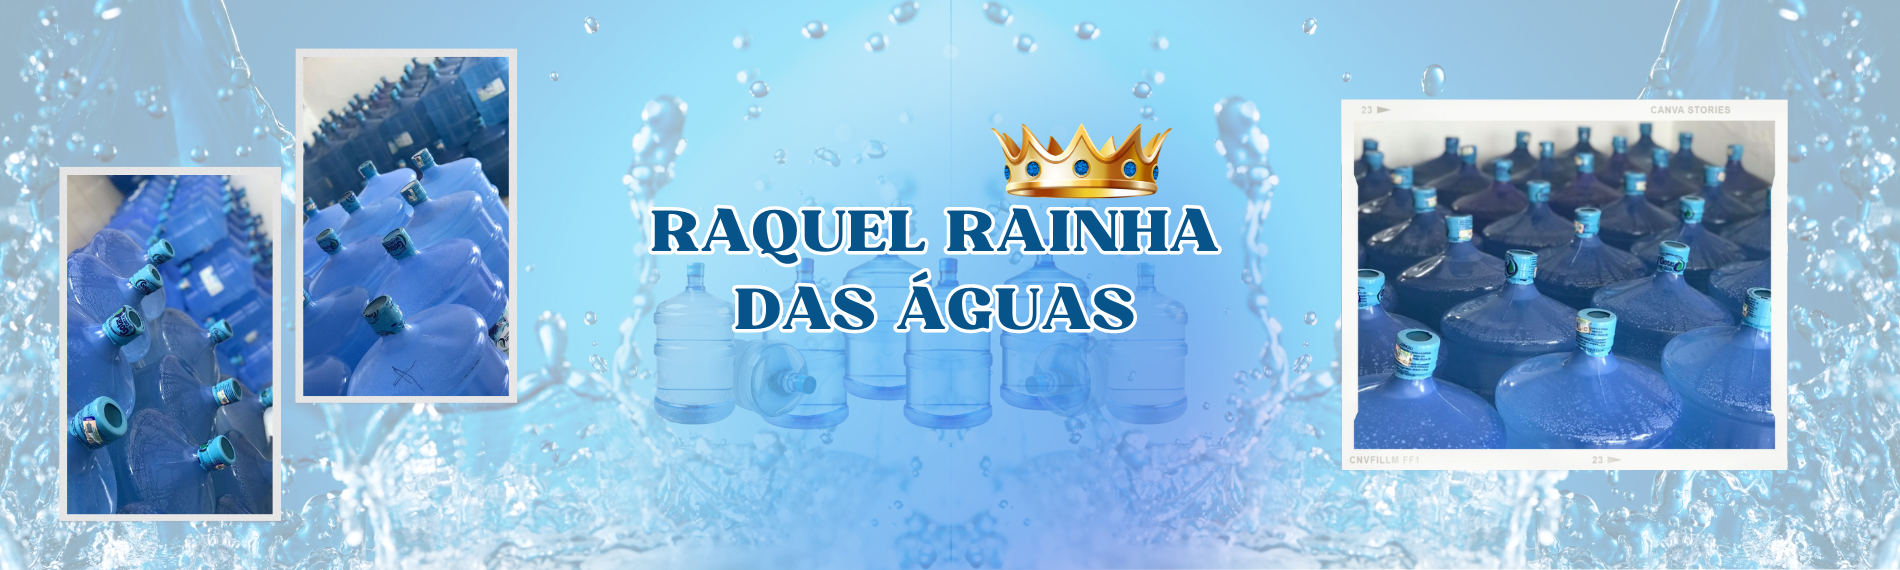 banner da empresa Raquel Rainha das Águas